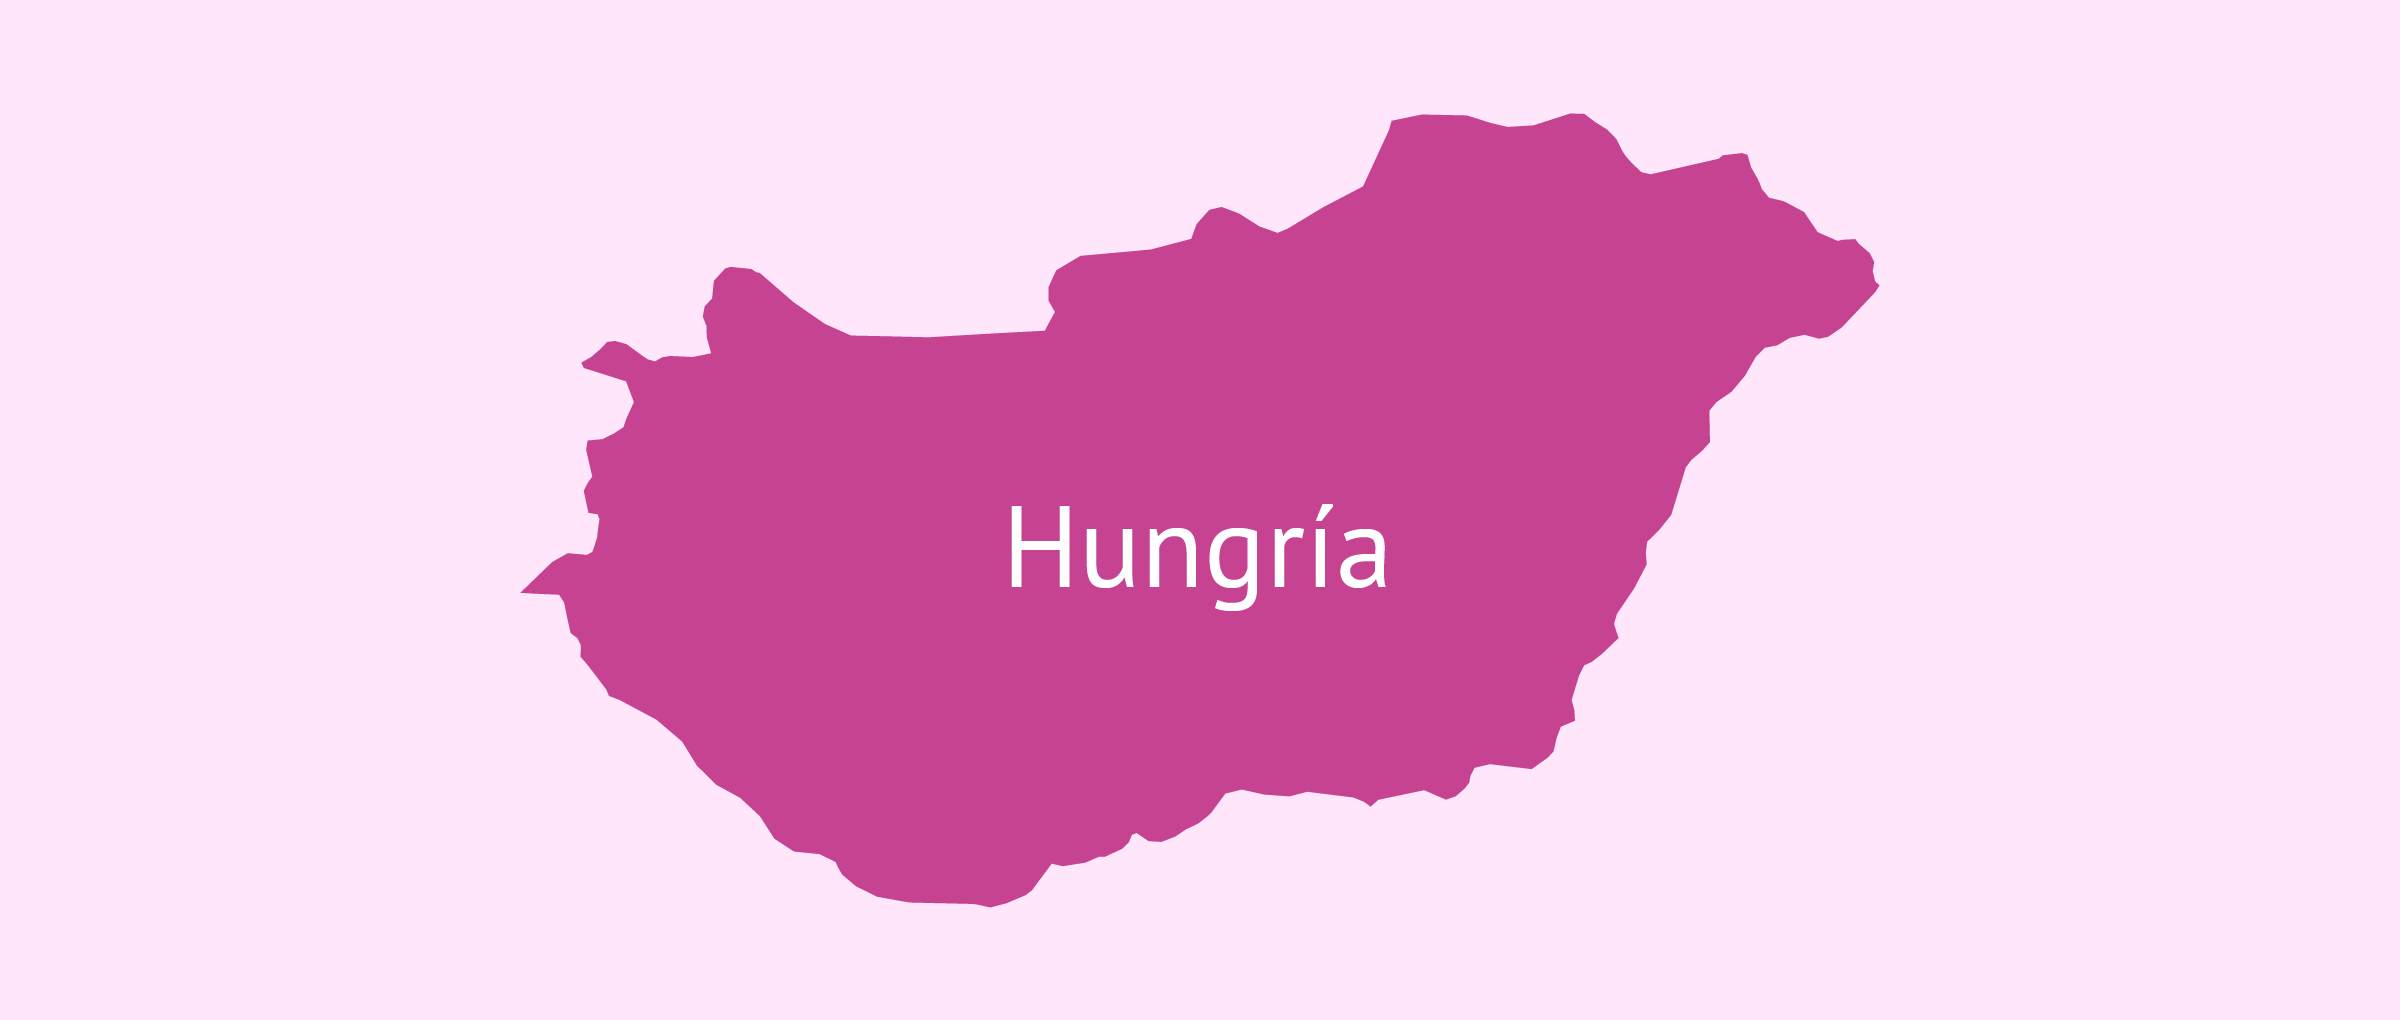 La gestación subrogada en Hungría y la situación de vacío legal